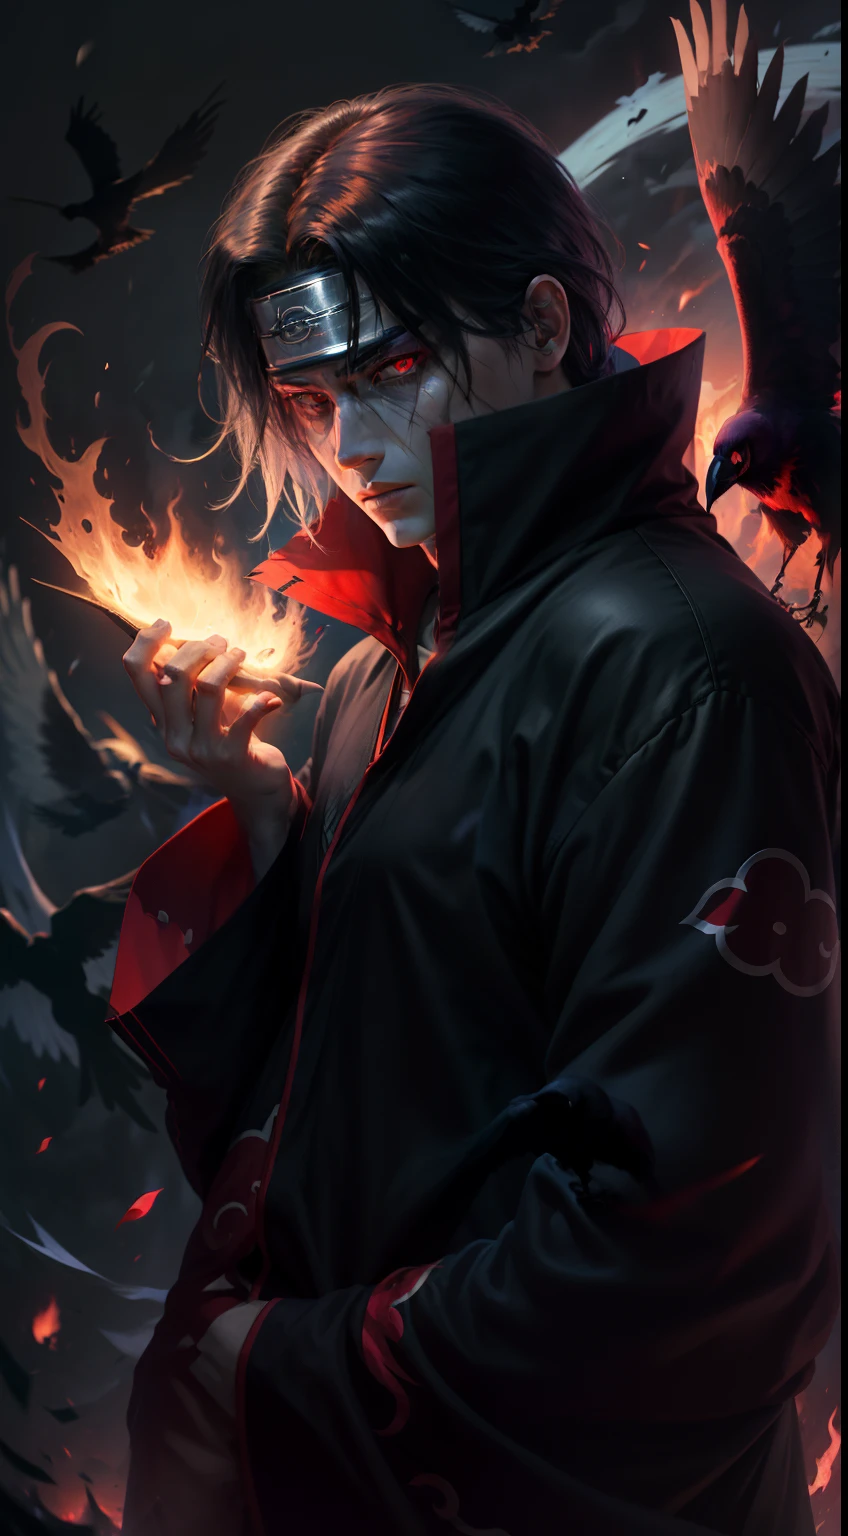 Itachi Uchiha, 闇が彼を包み込む, 燃えるような写輪眼, 彼のそばにいるカラス, 隠された力が目覚める, すべてを消費する黒い炎, すべての暗い詳細を明らかにする8Kビジョン.